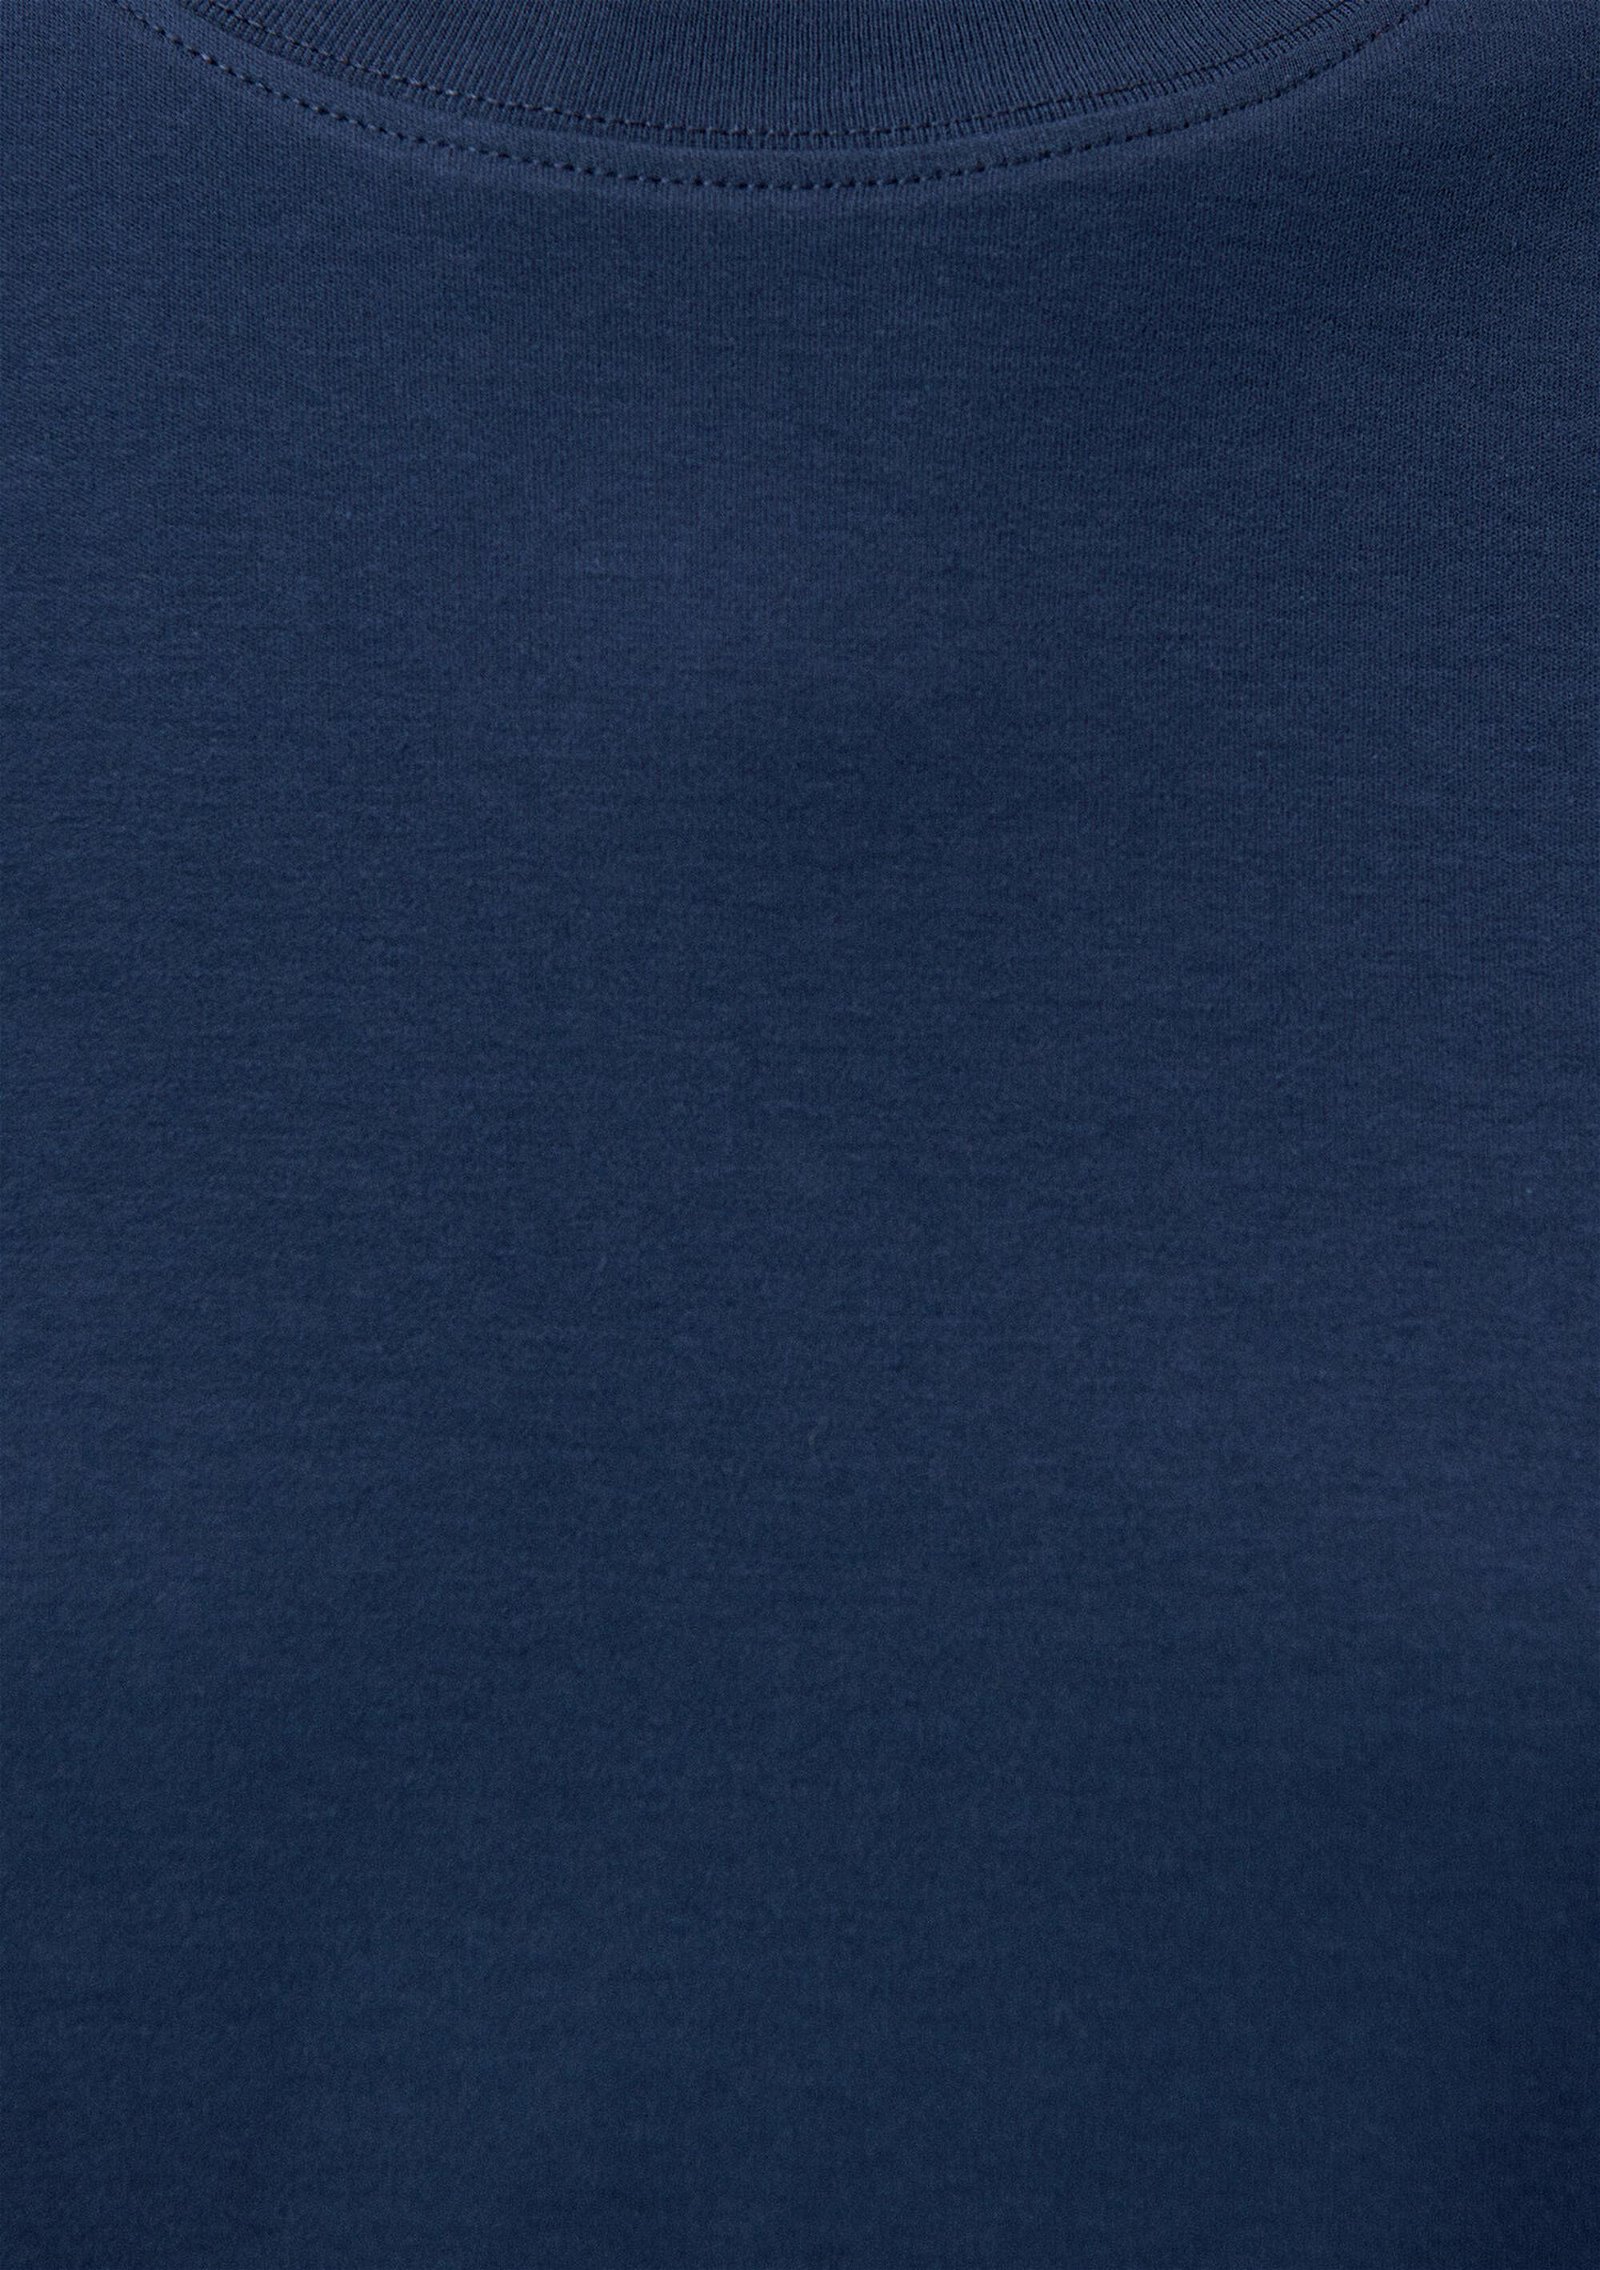 Mavi Bisiklet Yaka Lacivert Tişört Oversize / Geniş Kesim 1612448-70495